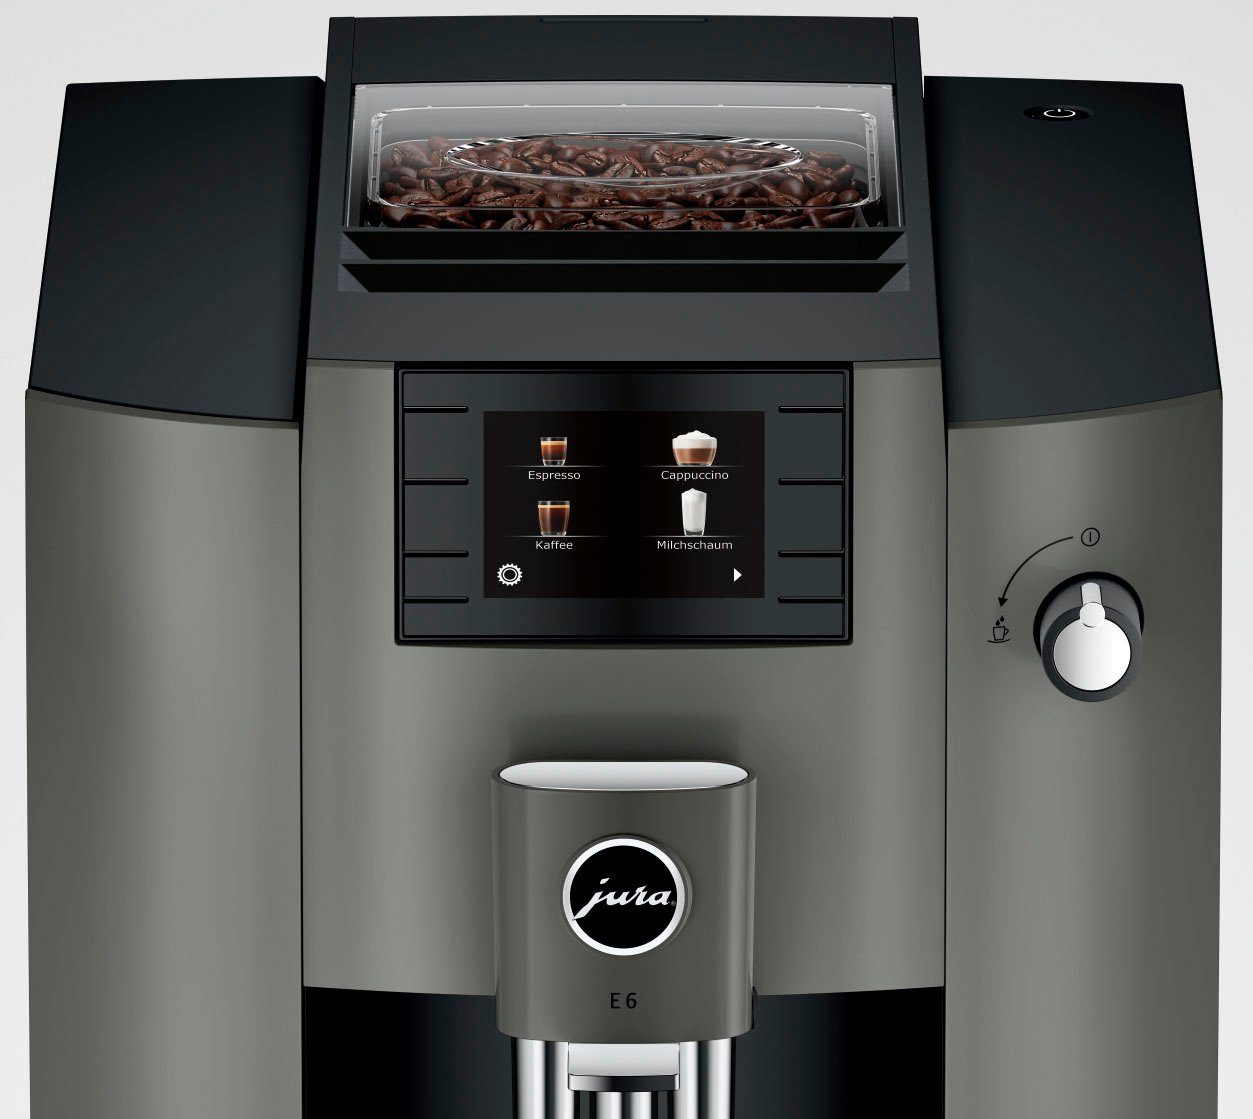 E6 (EC) 15439 Kaffeevollautomat JURA